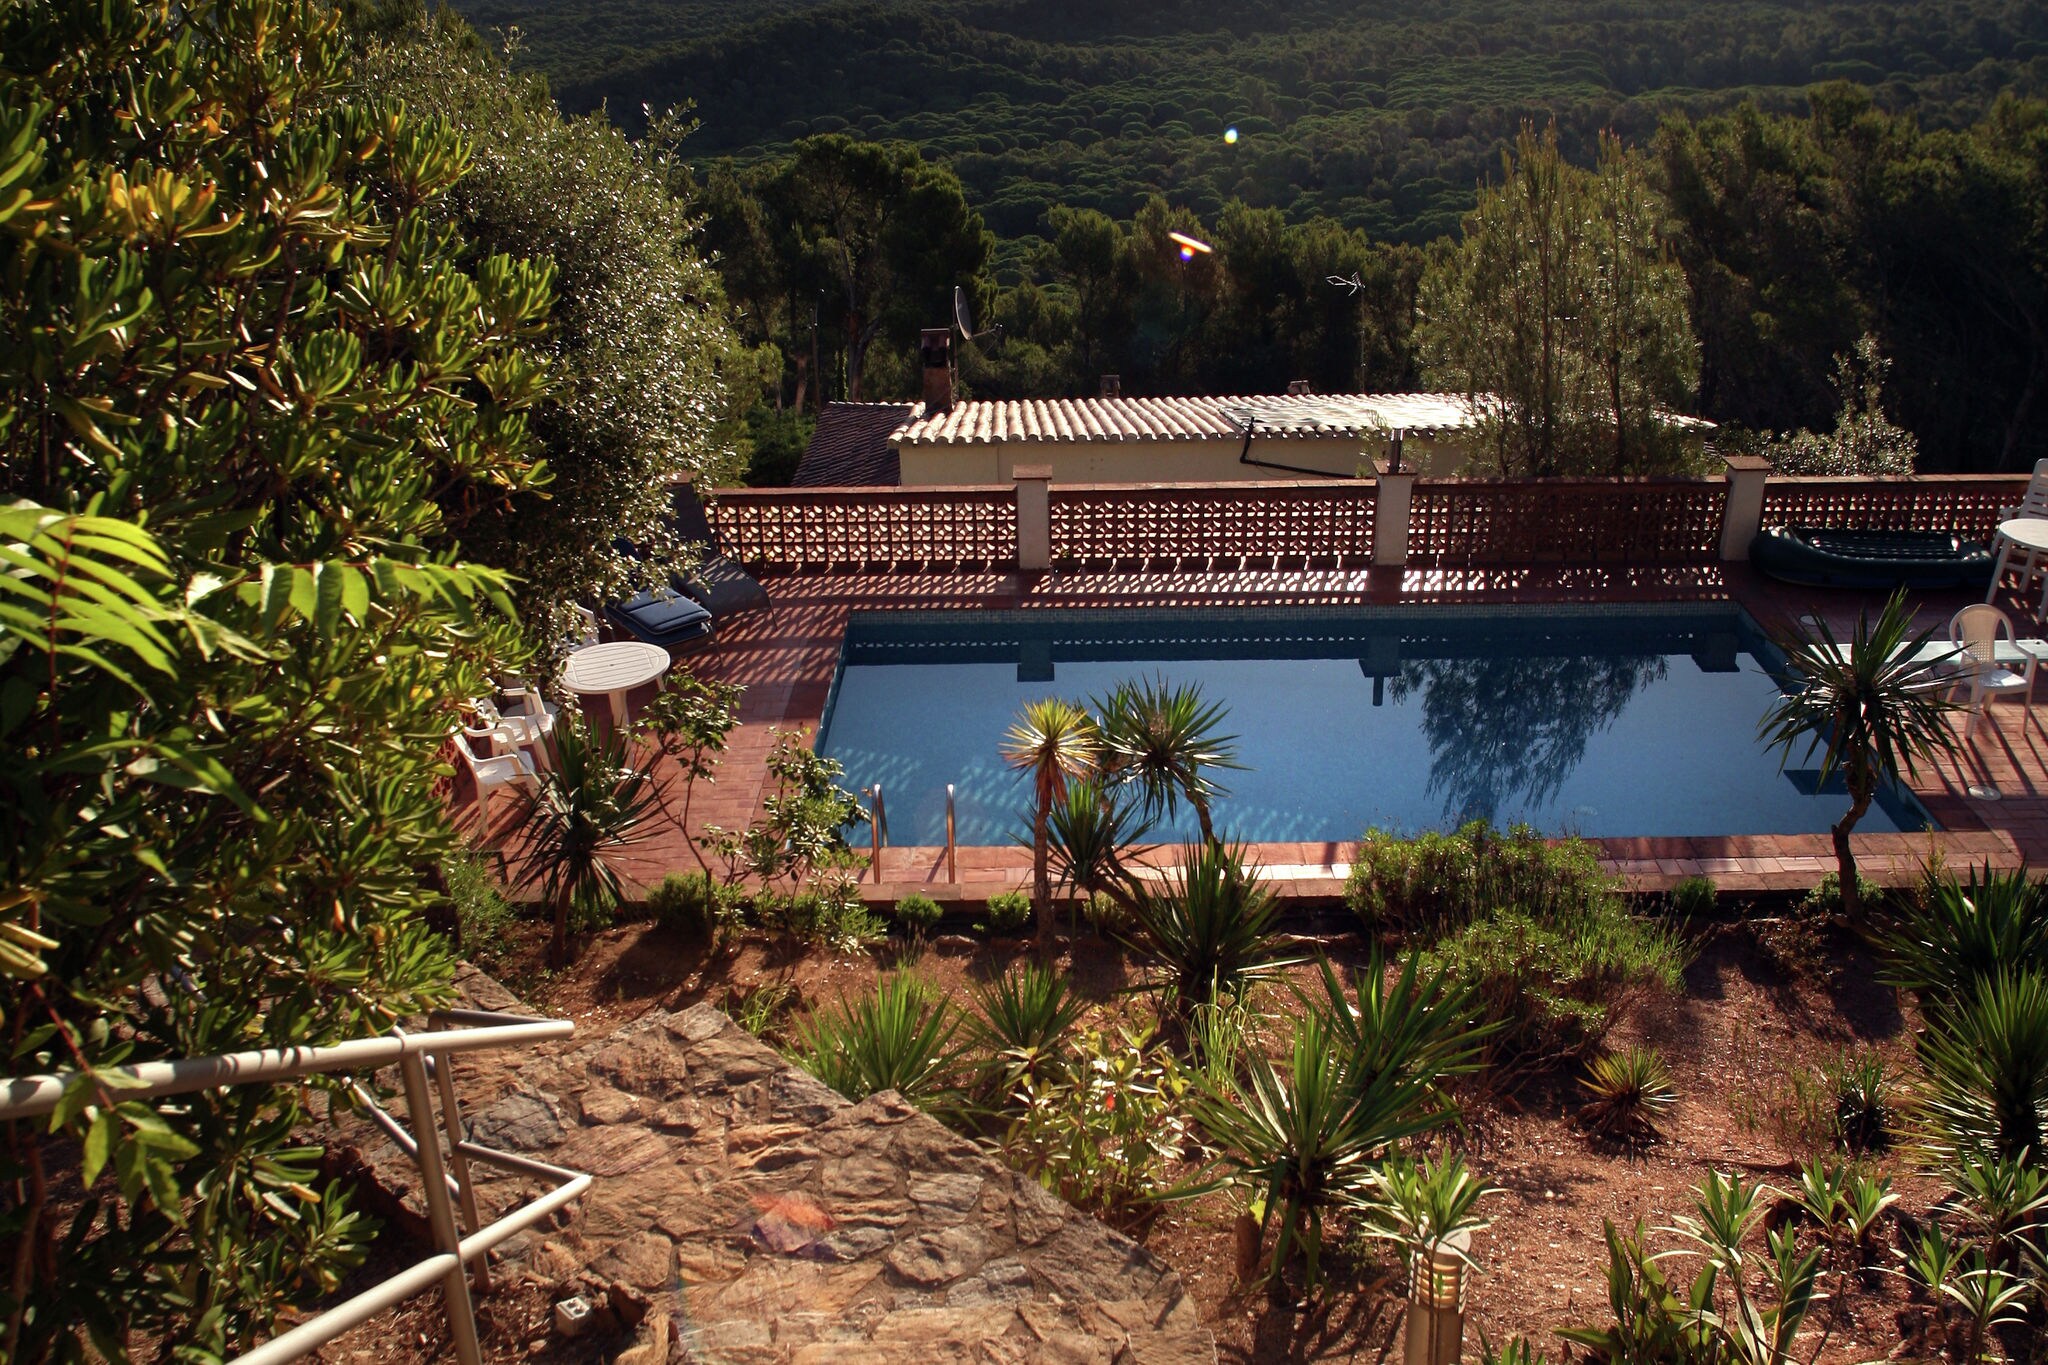 Maison de vacances captivante à Pals avec piscine